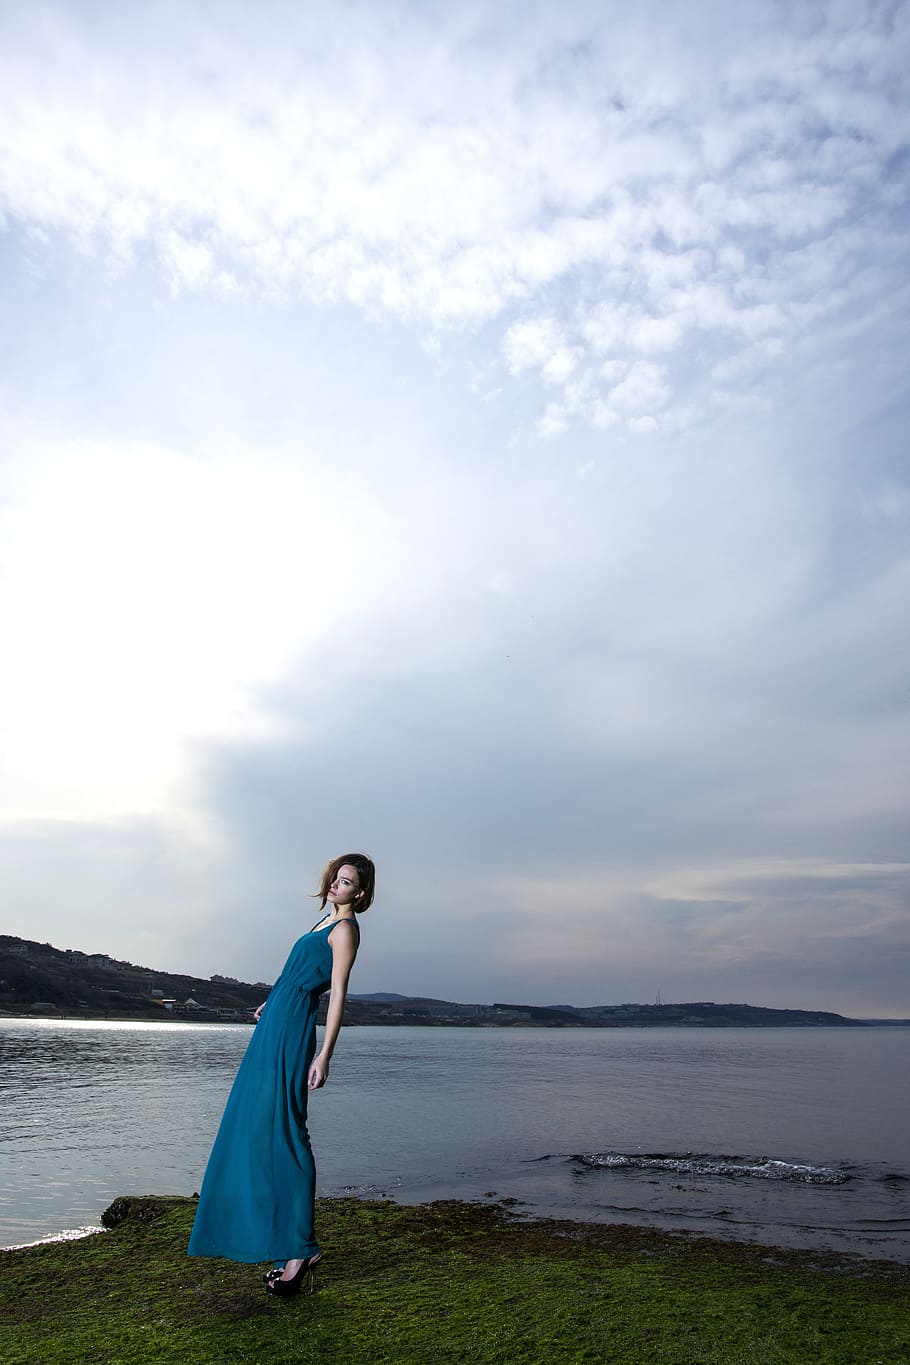 woman standing near body of water wearing blue dress, women's